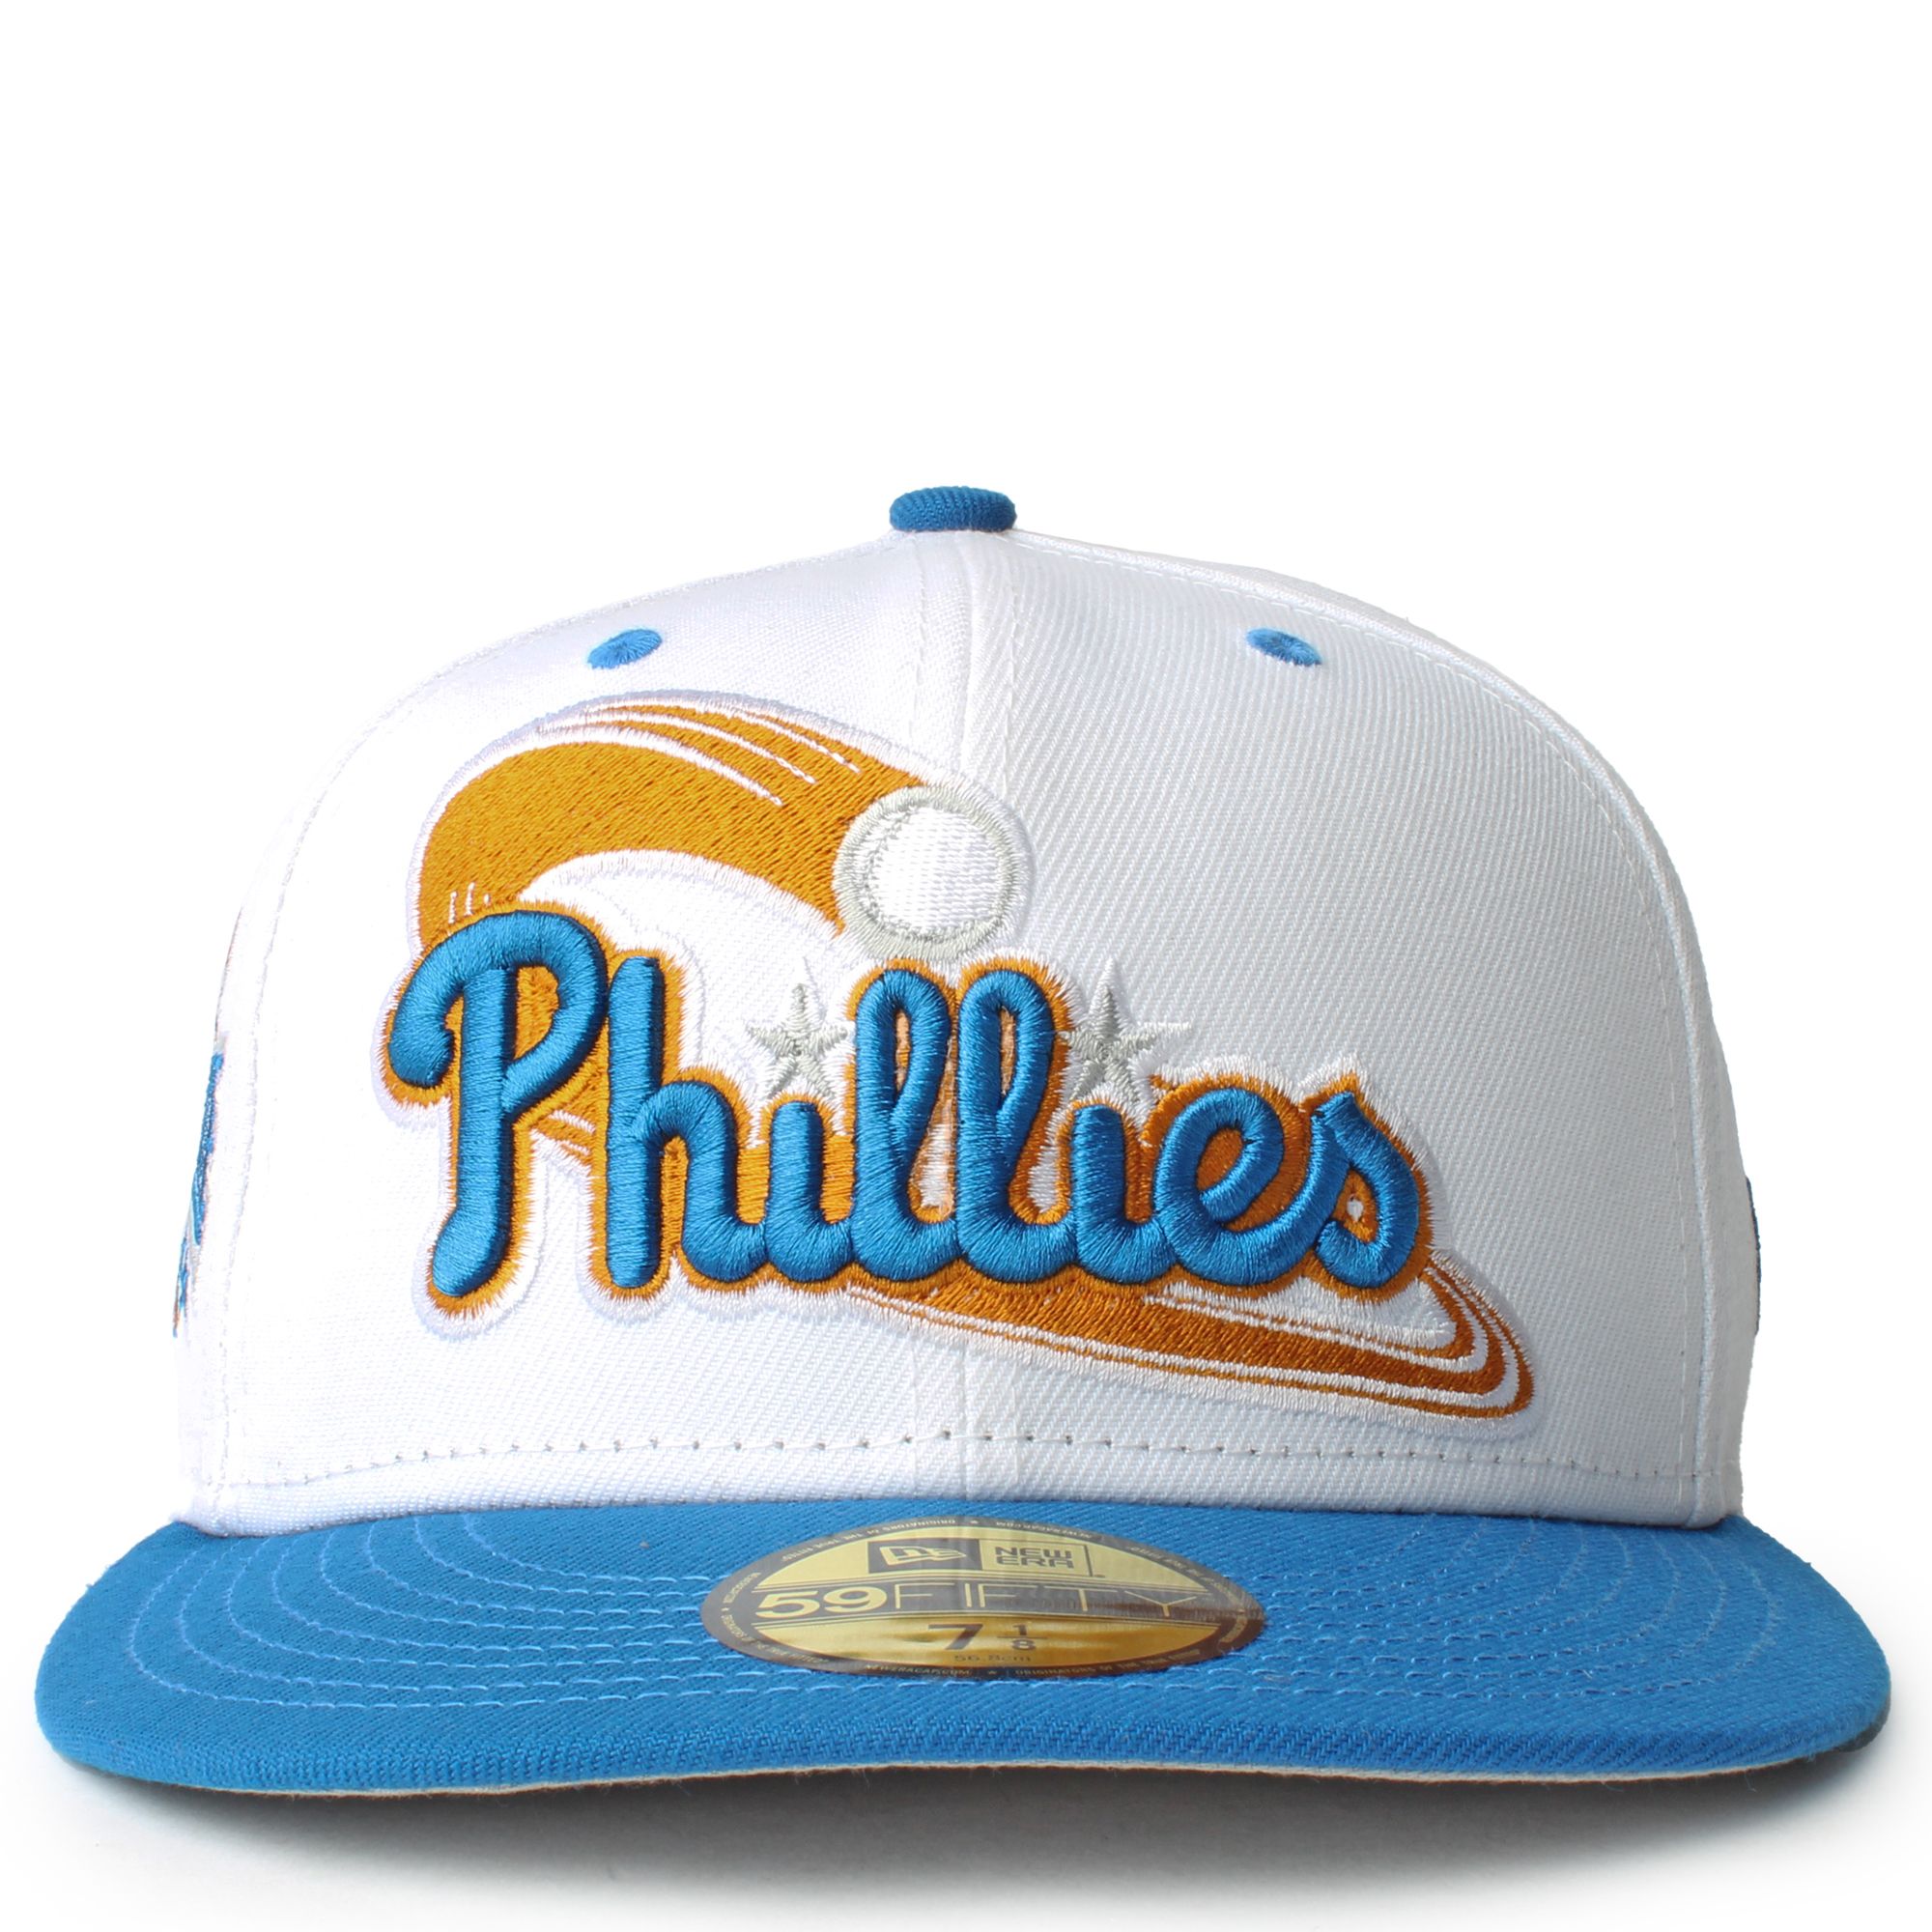 New Era Caps Philadelphia Phillies